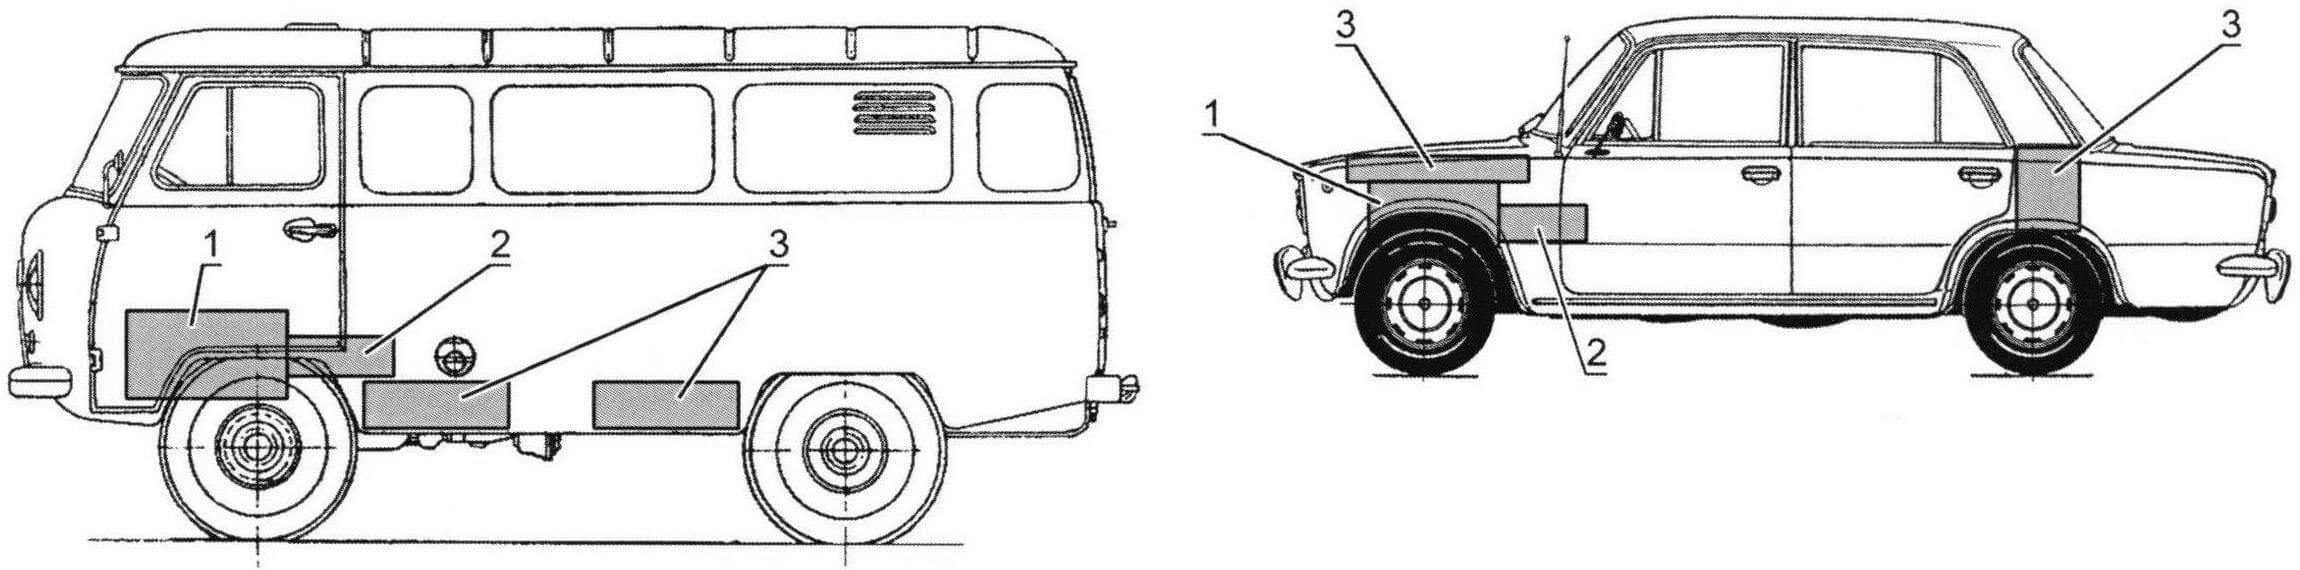 Схема расположения основных узлов электромобиля на базе заднеприводного седана и электромобиля вагонной компоновки